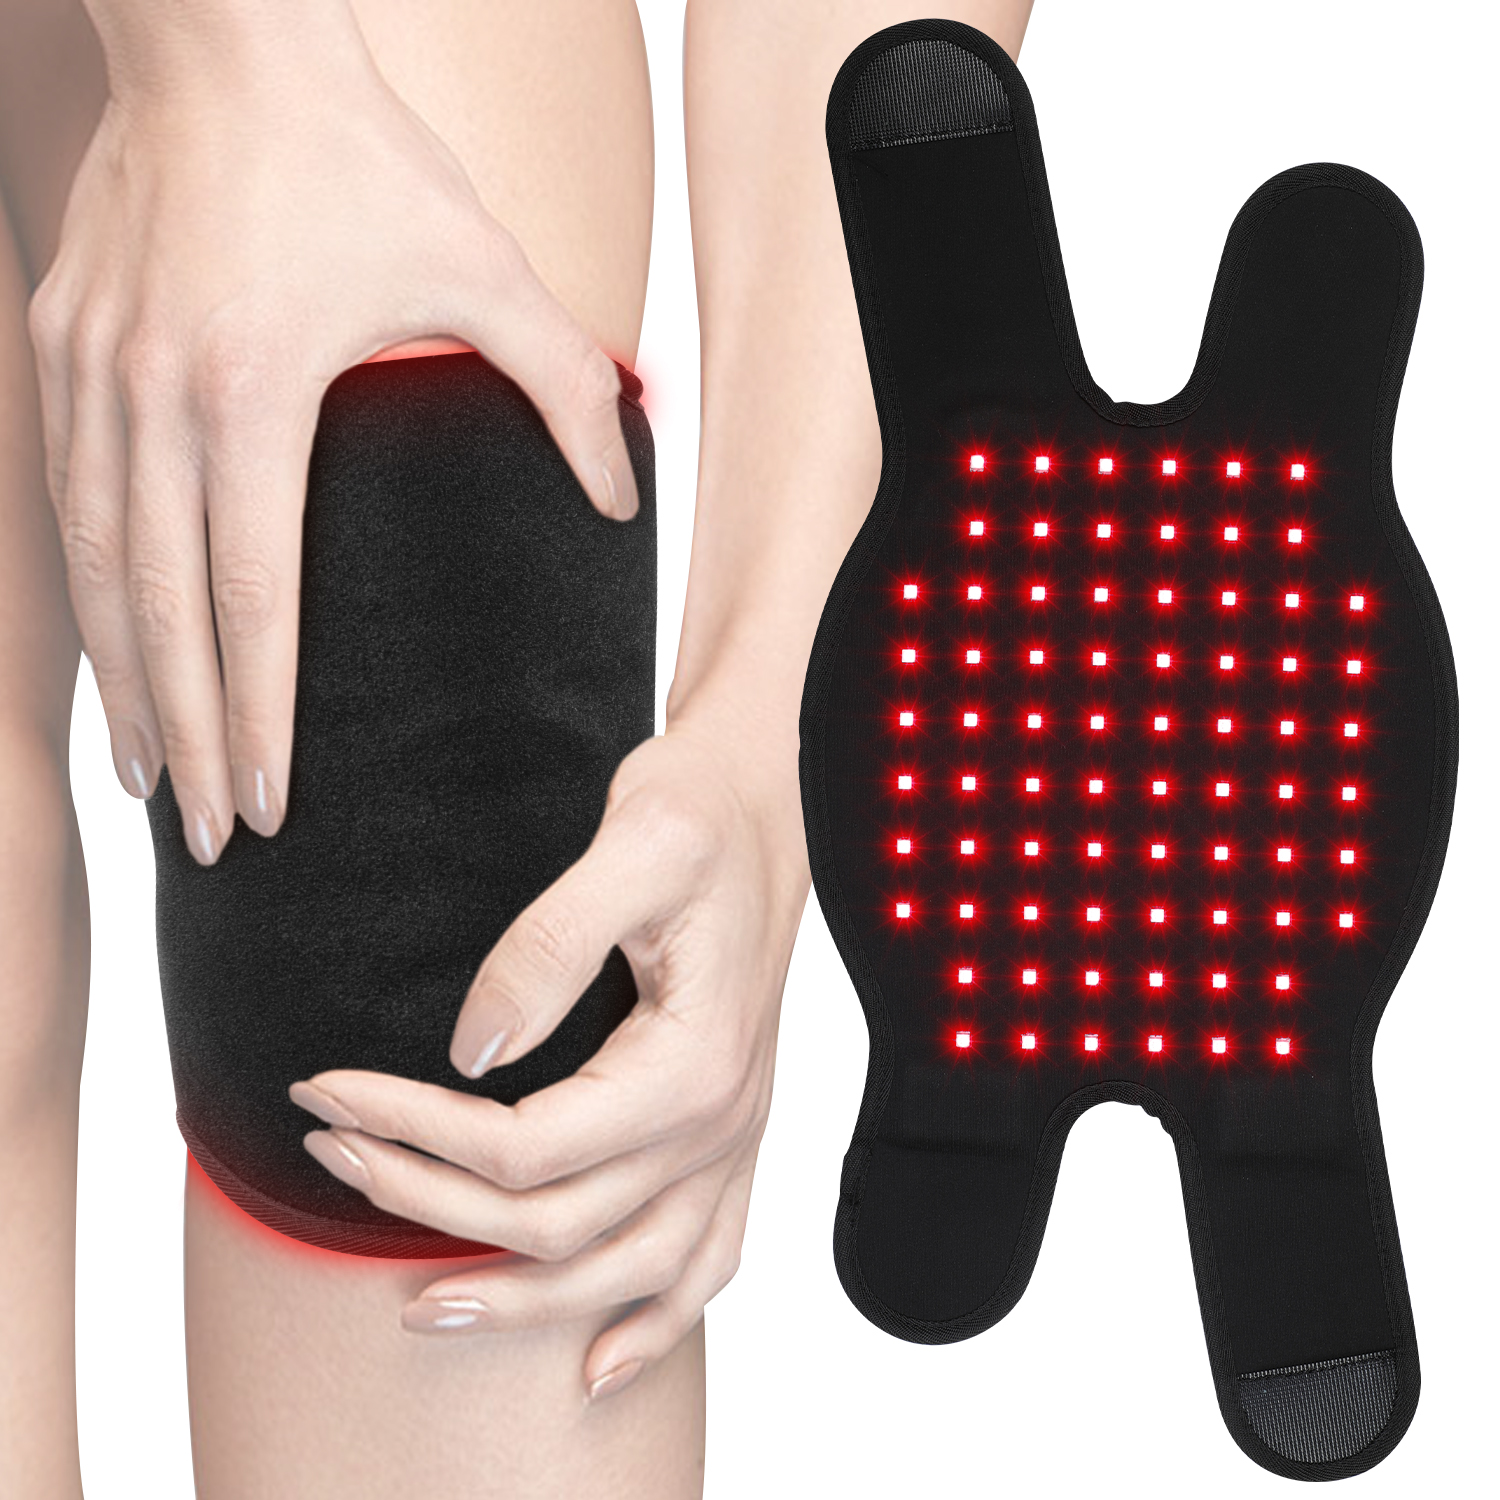 Invólucro de terapia de luz vermelha para alívio da dor nas articulações do joelho Varinha de terapia de luz vermelha-Kinreen preço de fábrica